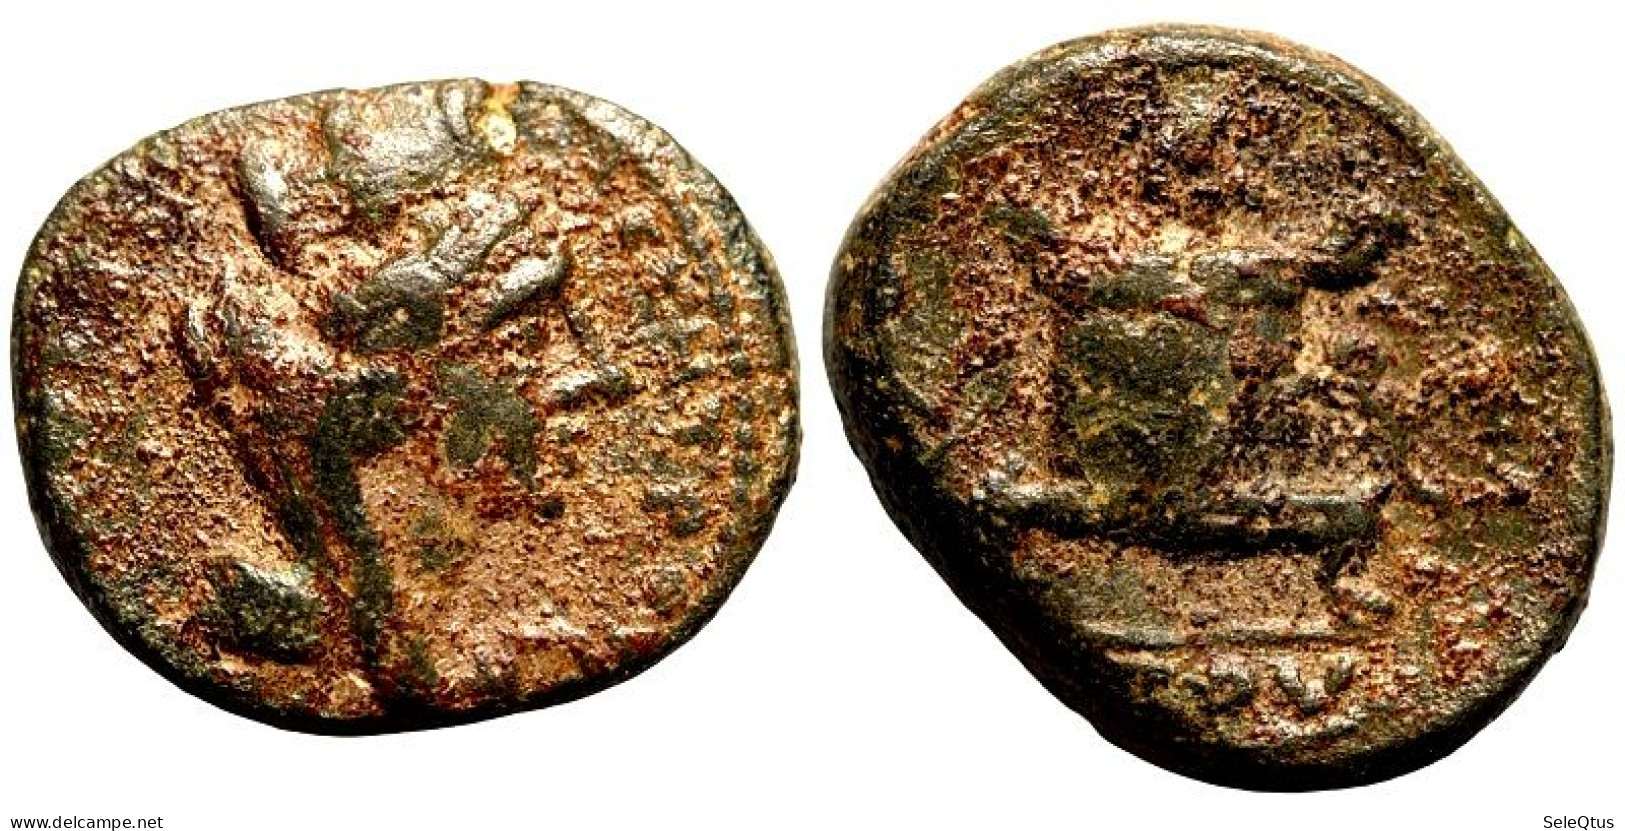 Monedas Antiguas - Ancient Coins (00105-006-0737) - Griekenland